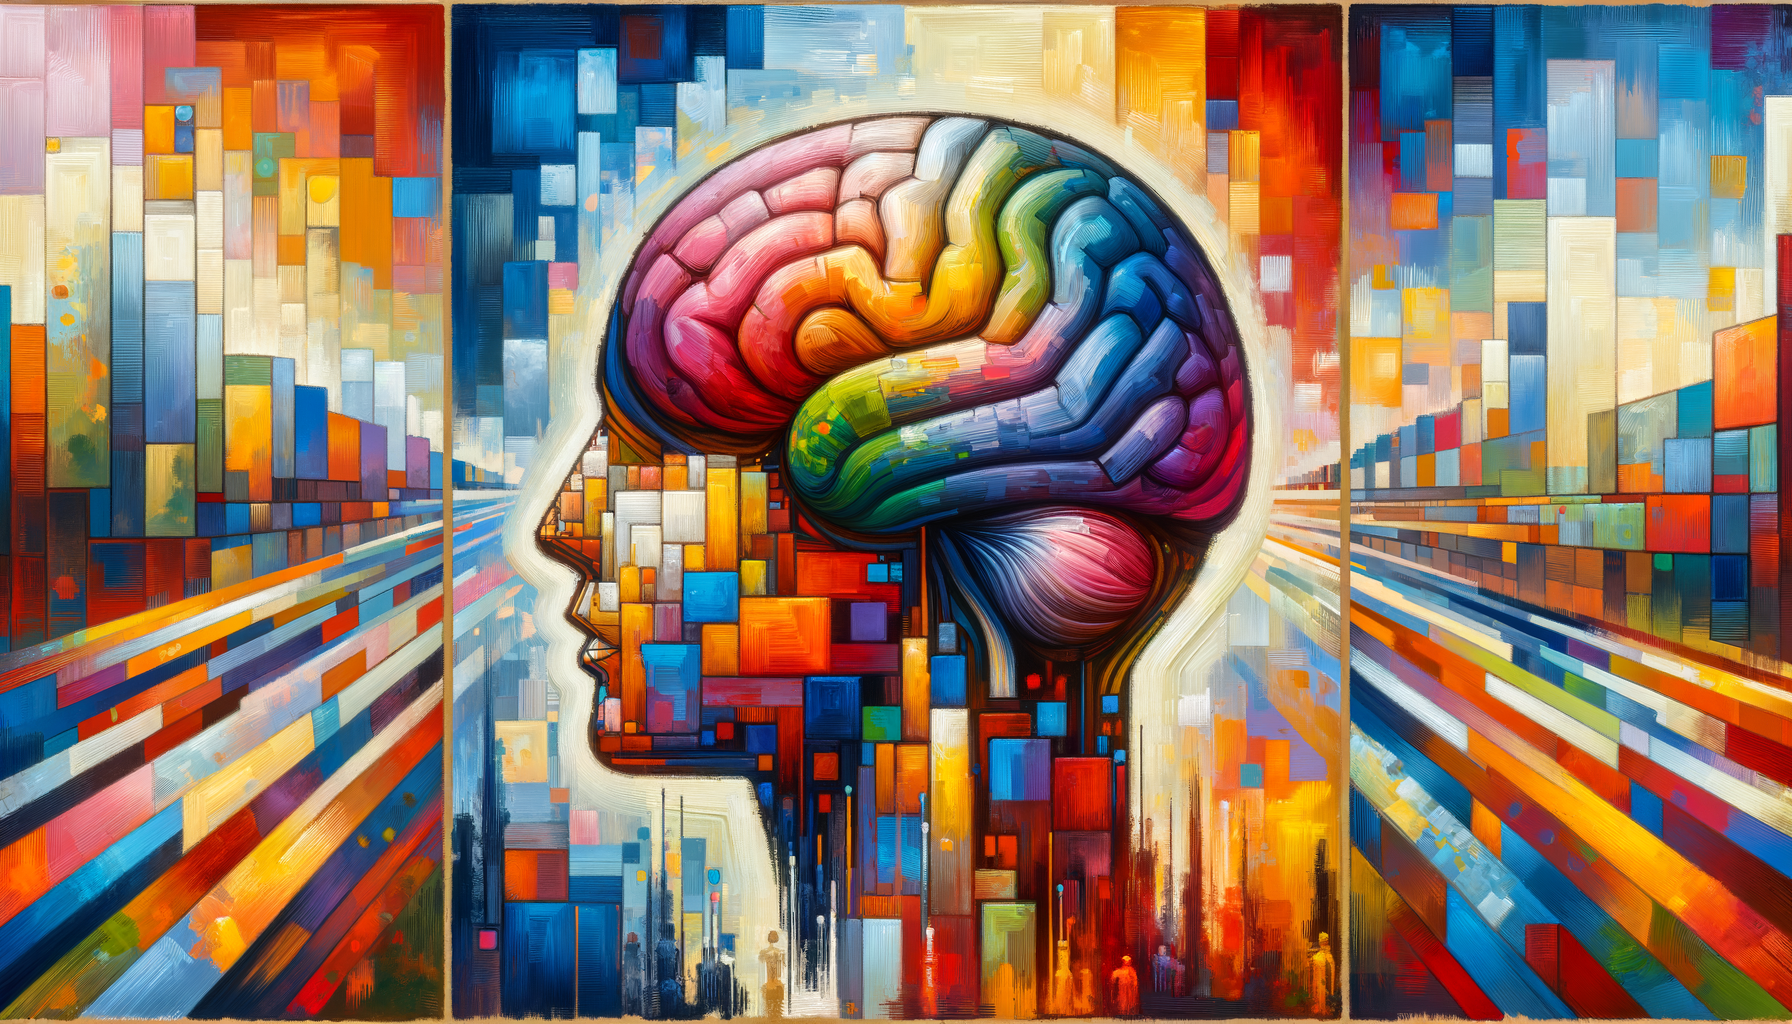 Revolutioniere Dein Denken: Gehirnjogging für tägliche Genialität